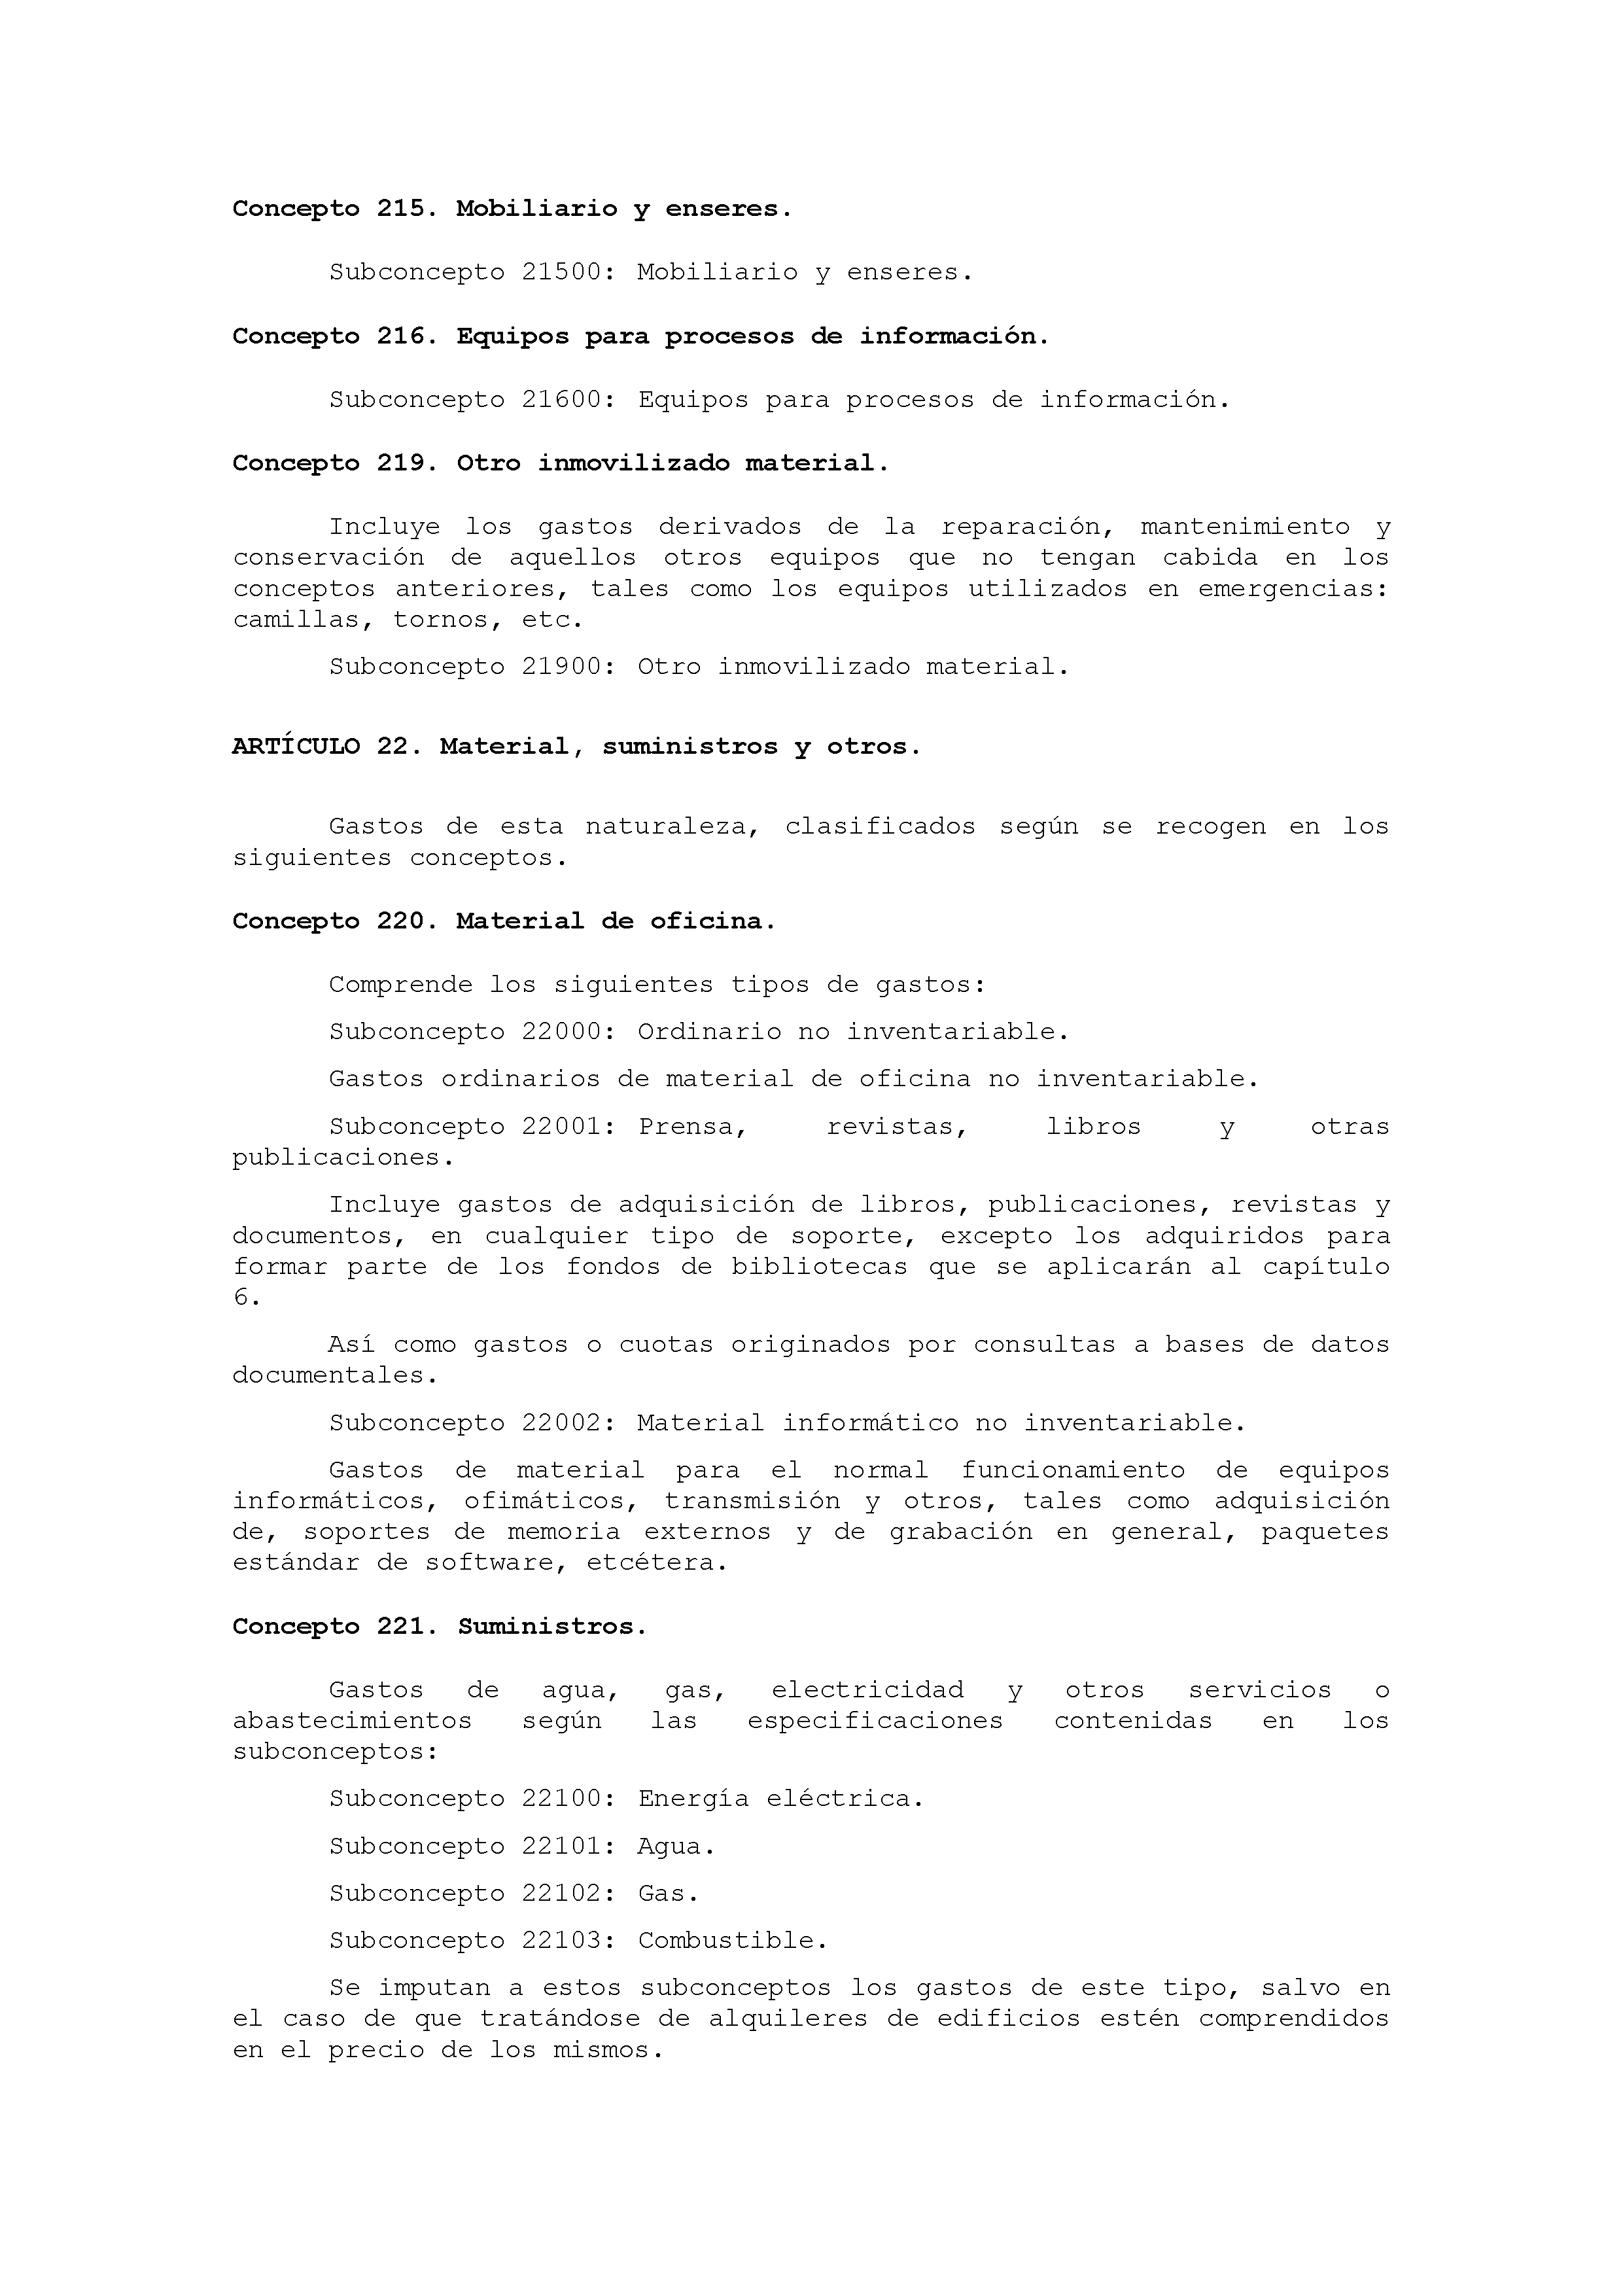 ANEXO IX CÓDIGO DE LA CLASIFICACIÓN ECONÓMICA DE LOS GASTOS PÚBLICOS Pag 17